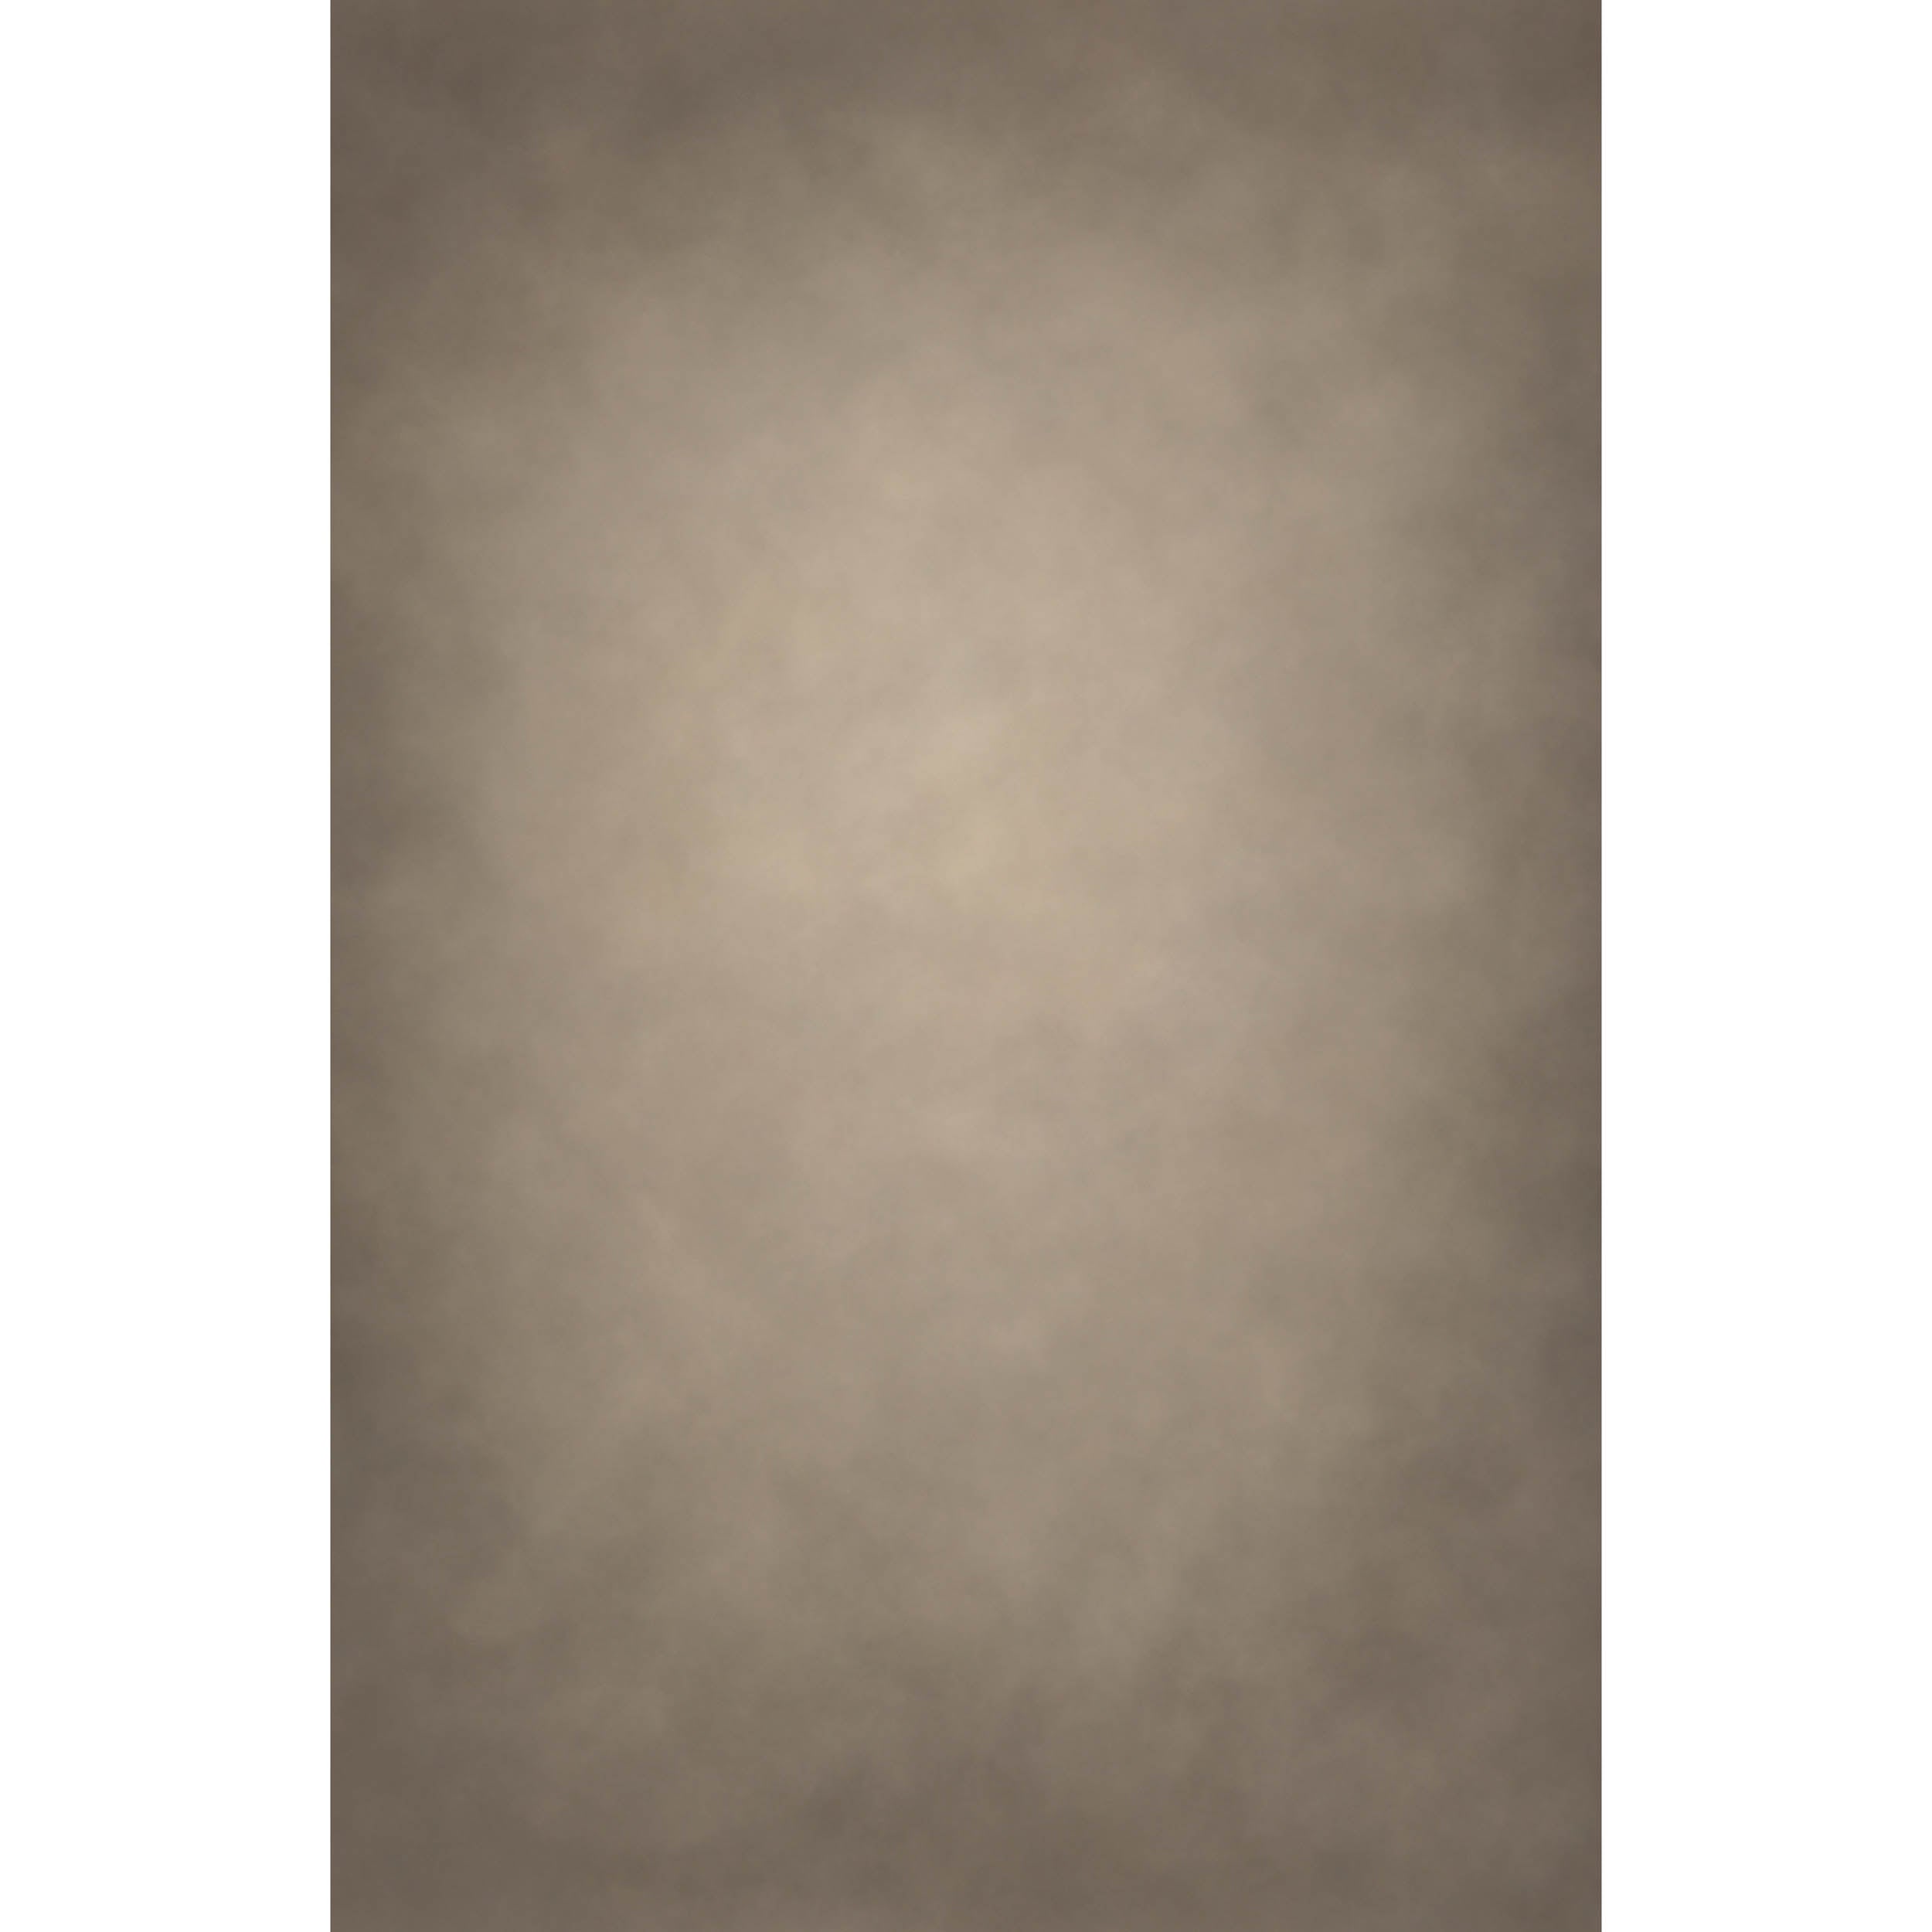 EASIFRAME CURVED C45-Grayish Brown Light Fabric Skin Pattern